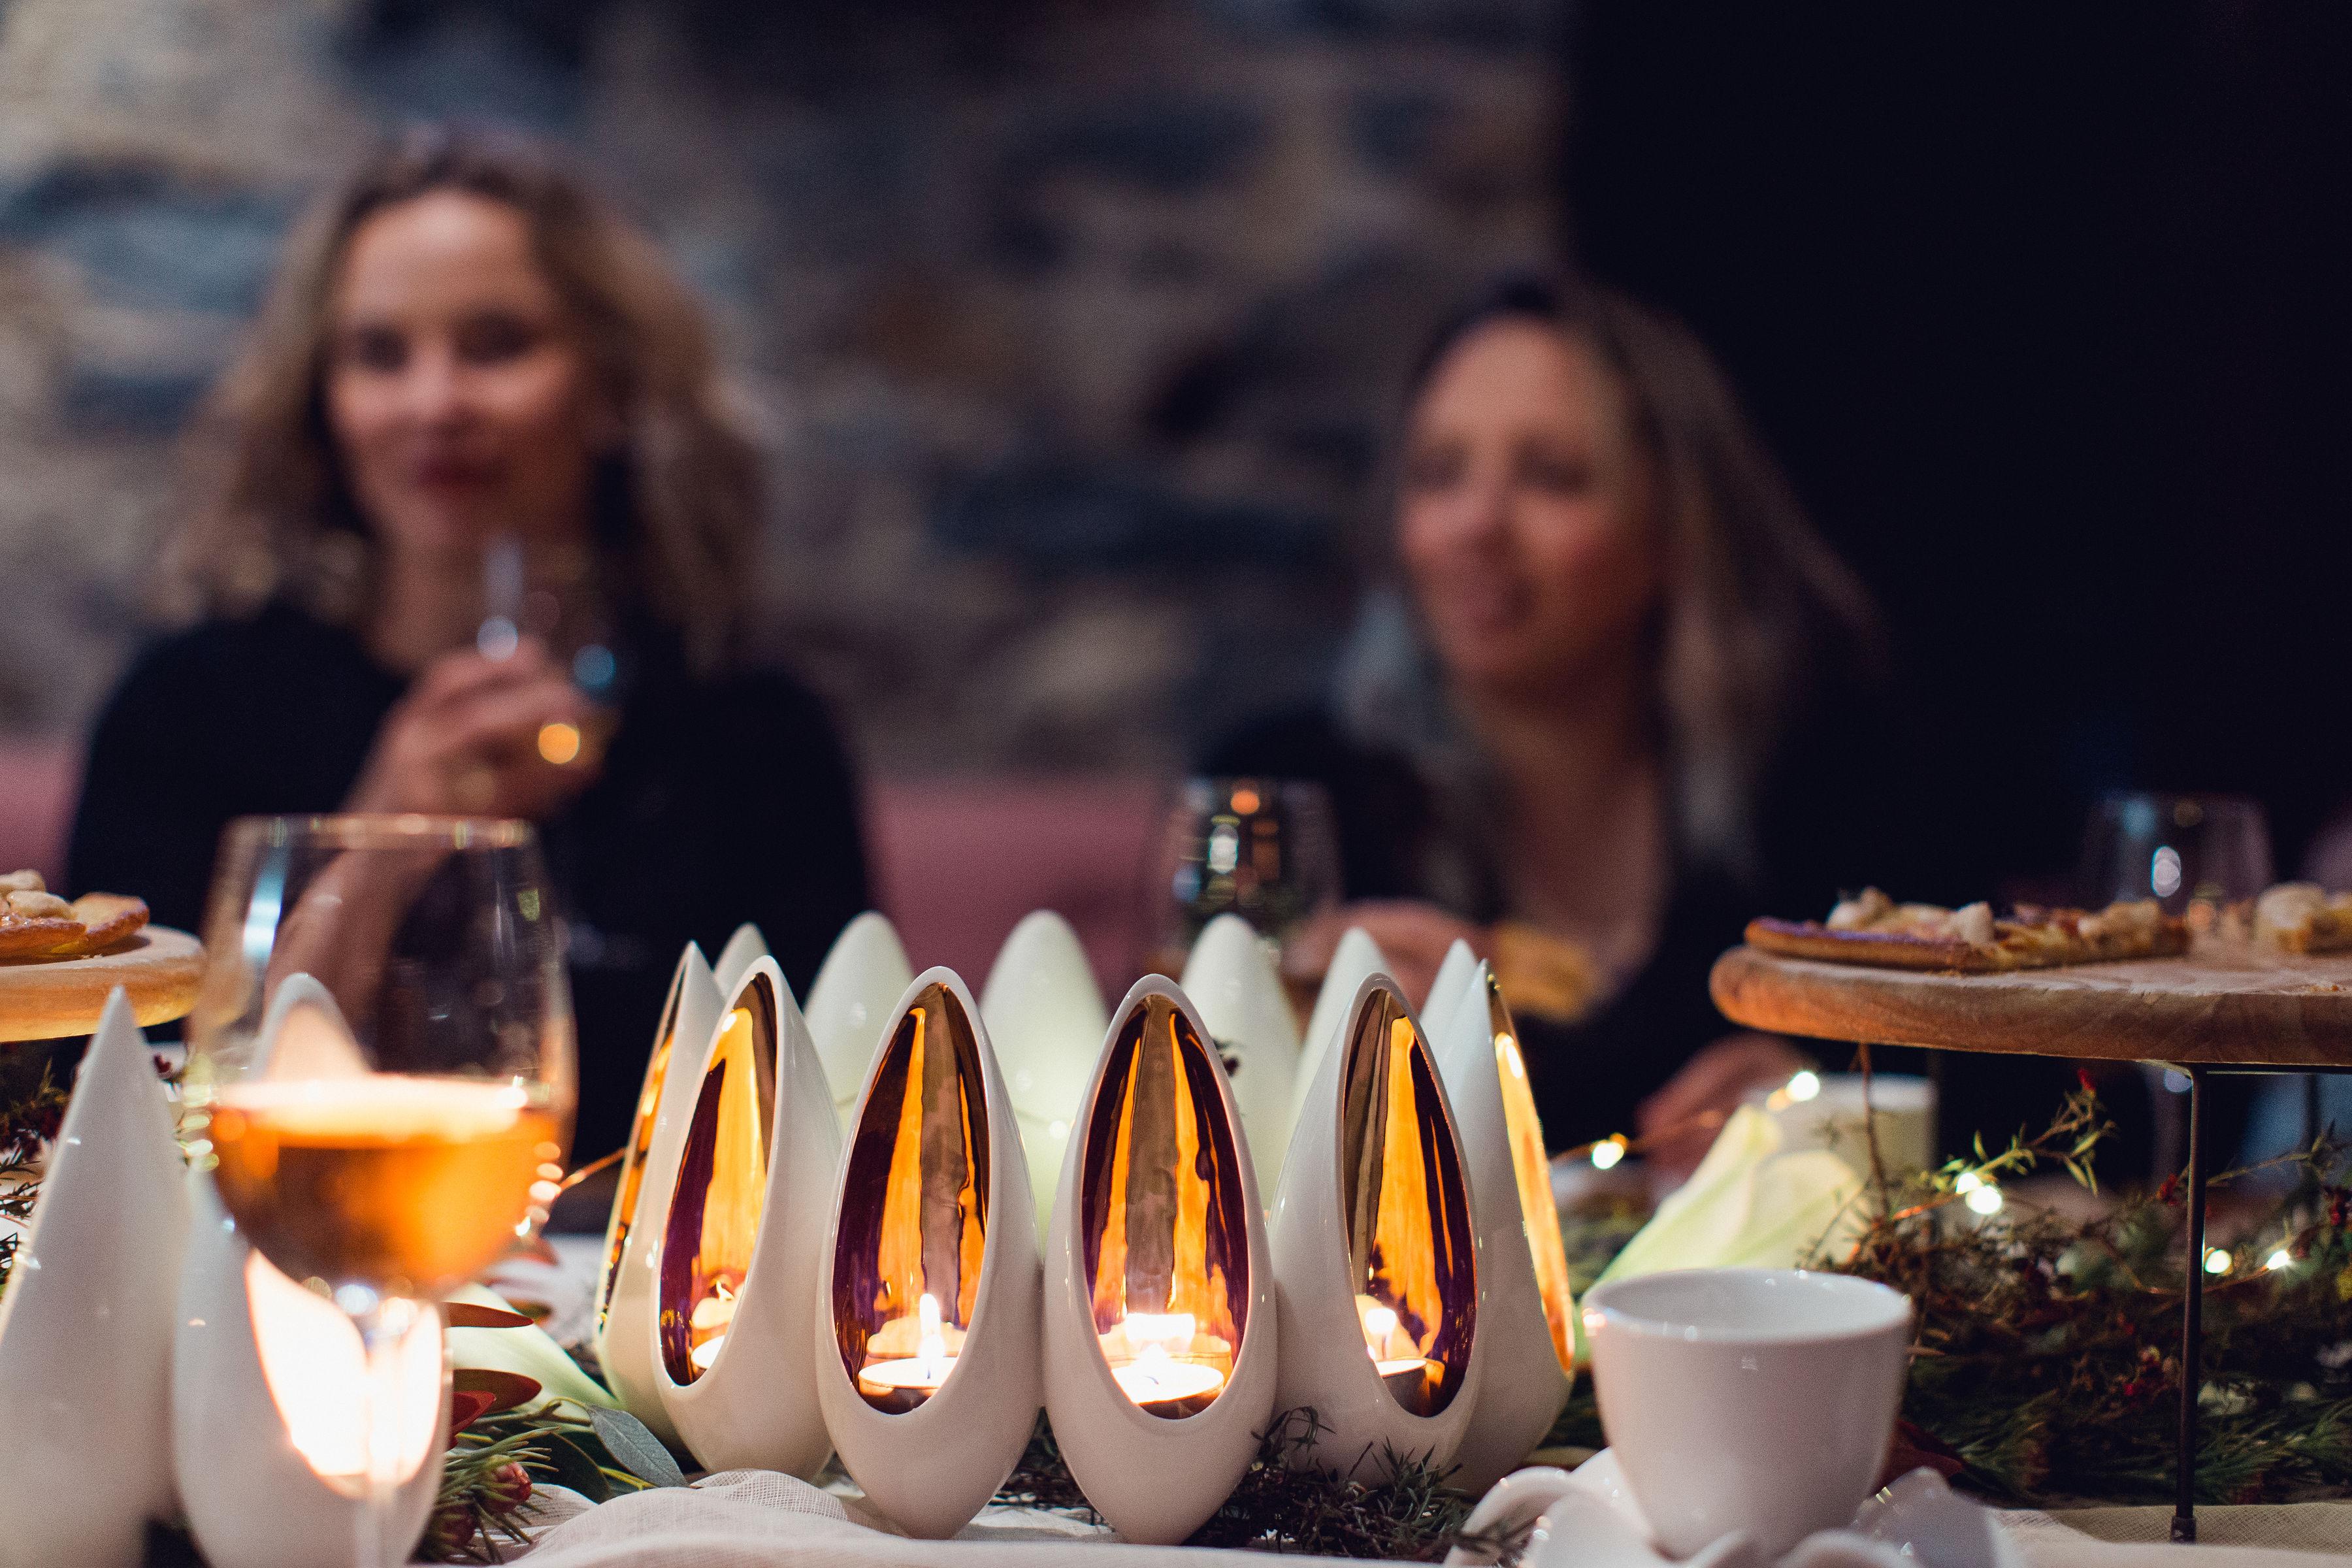 Découvrez l'élégance et la beauté de la couronne de bougies à réchaud Seed Pod, un centre de table unique fabriqué par des artisans en Nouvelle-Zélande. Faisant partie de la collection exclusive Seed Pod, cette couronne de bougies à réchaud ajoute